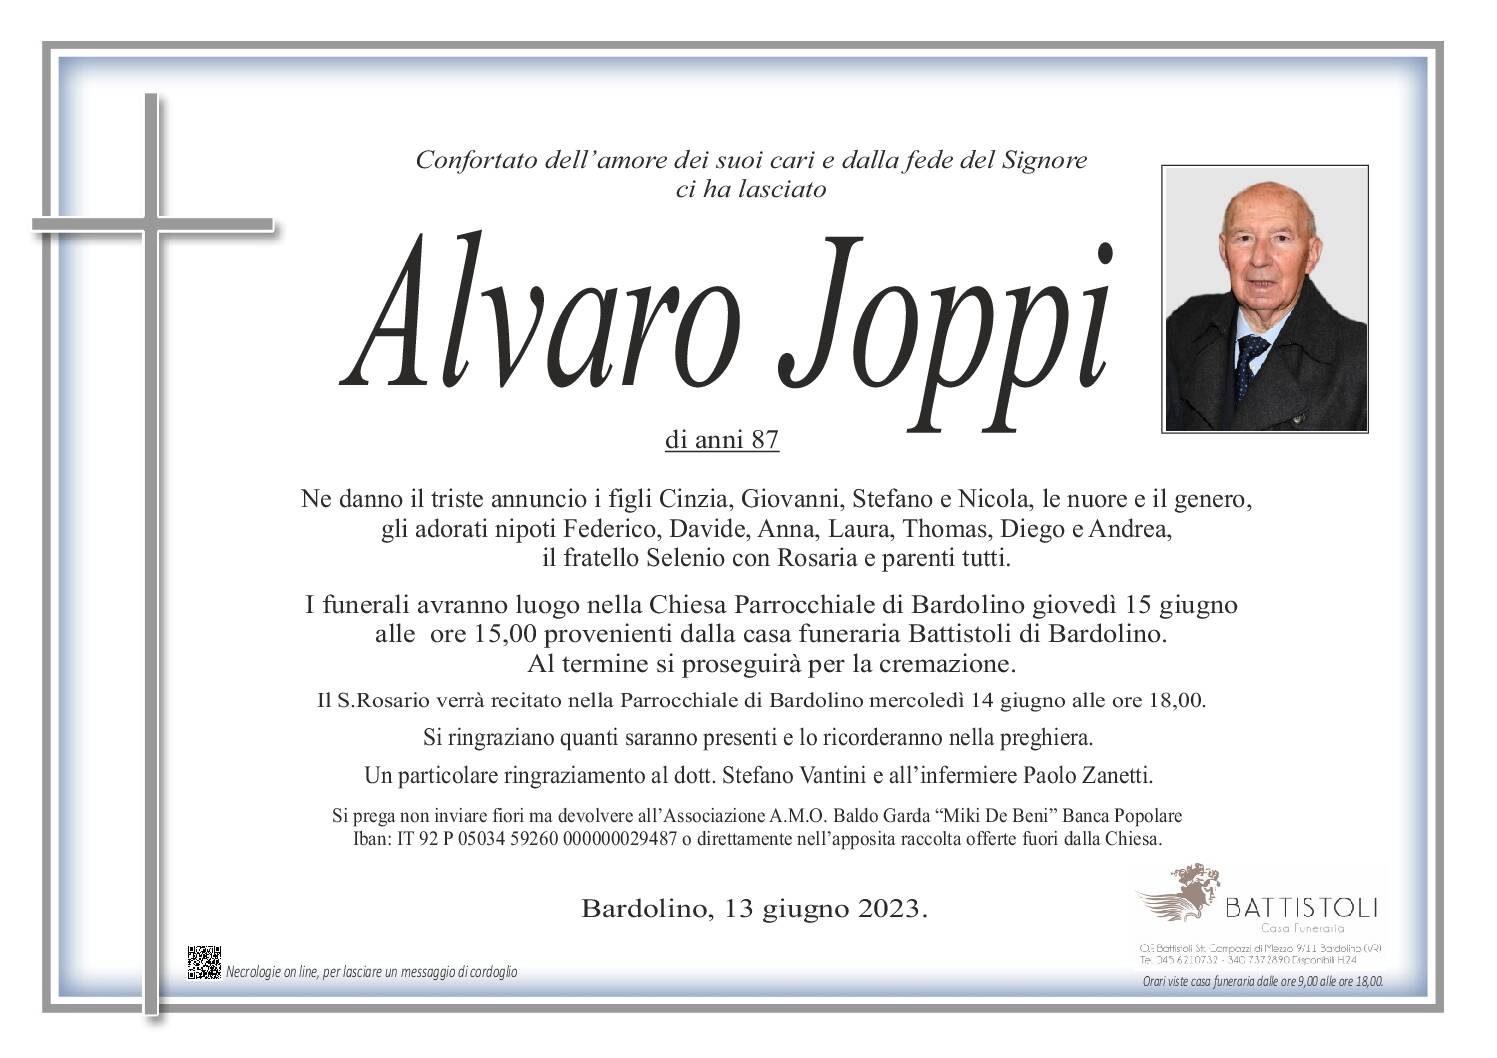 Joppi Alvaro